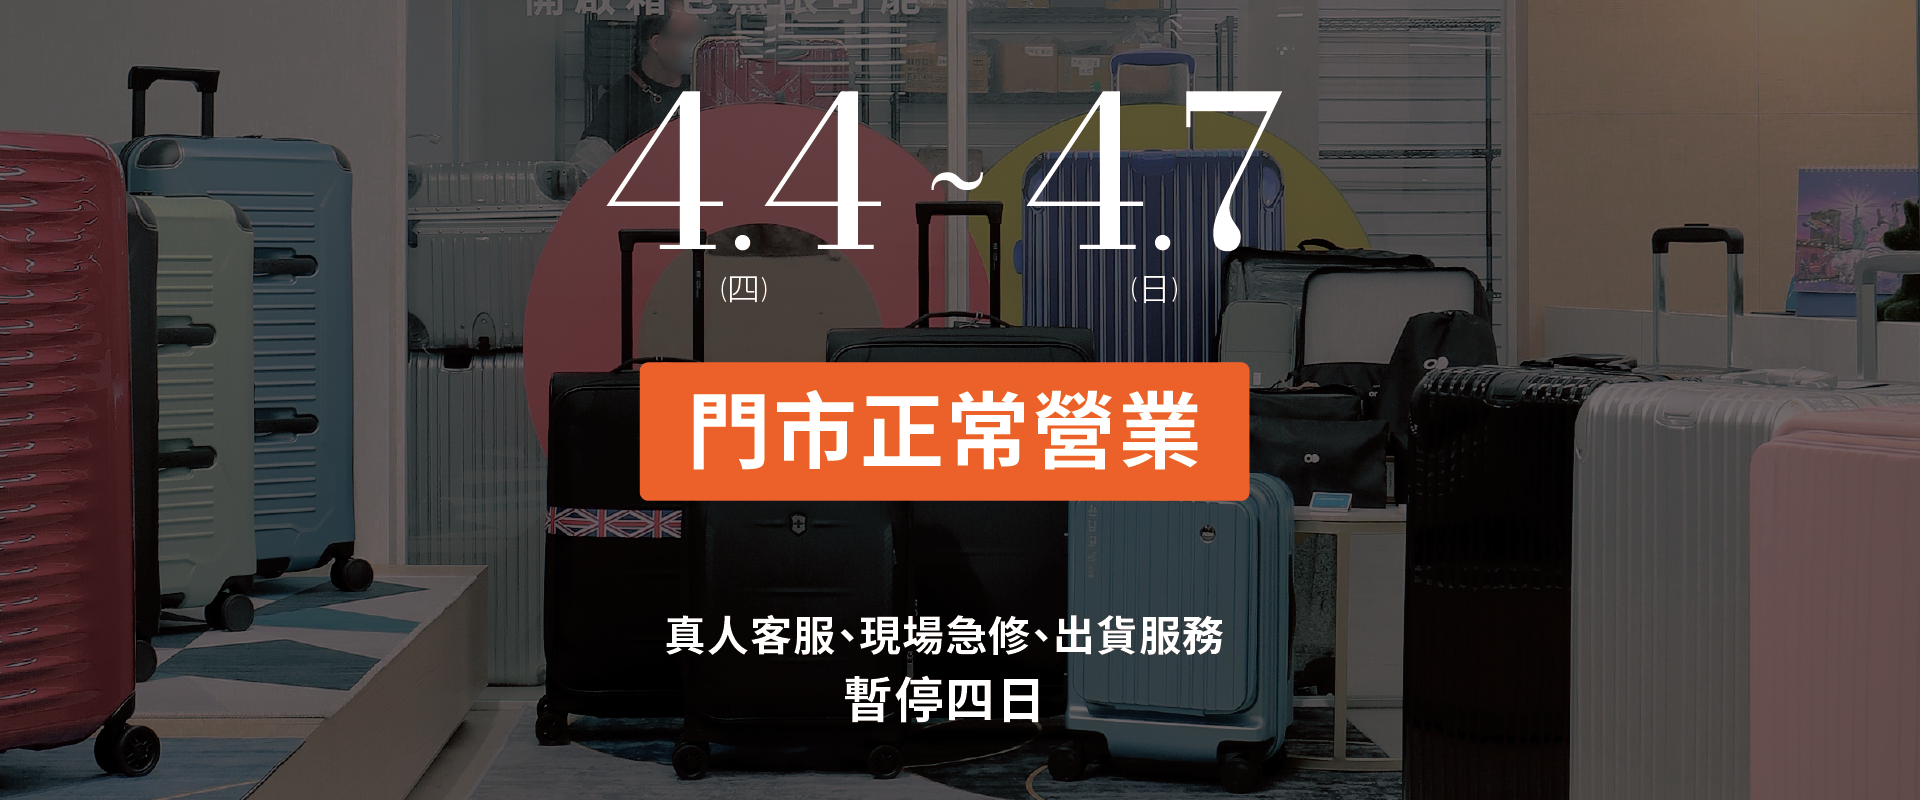 聯瑩國際行李箱-生產製造、客製、OEM、ODM、批發、販售